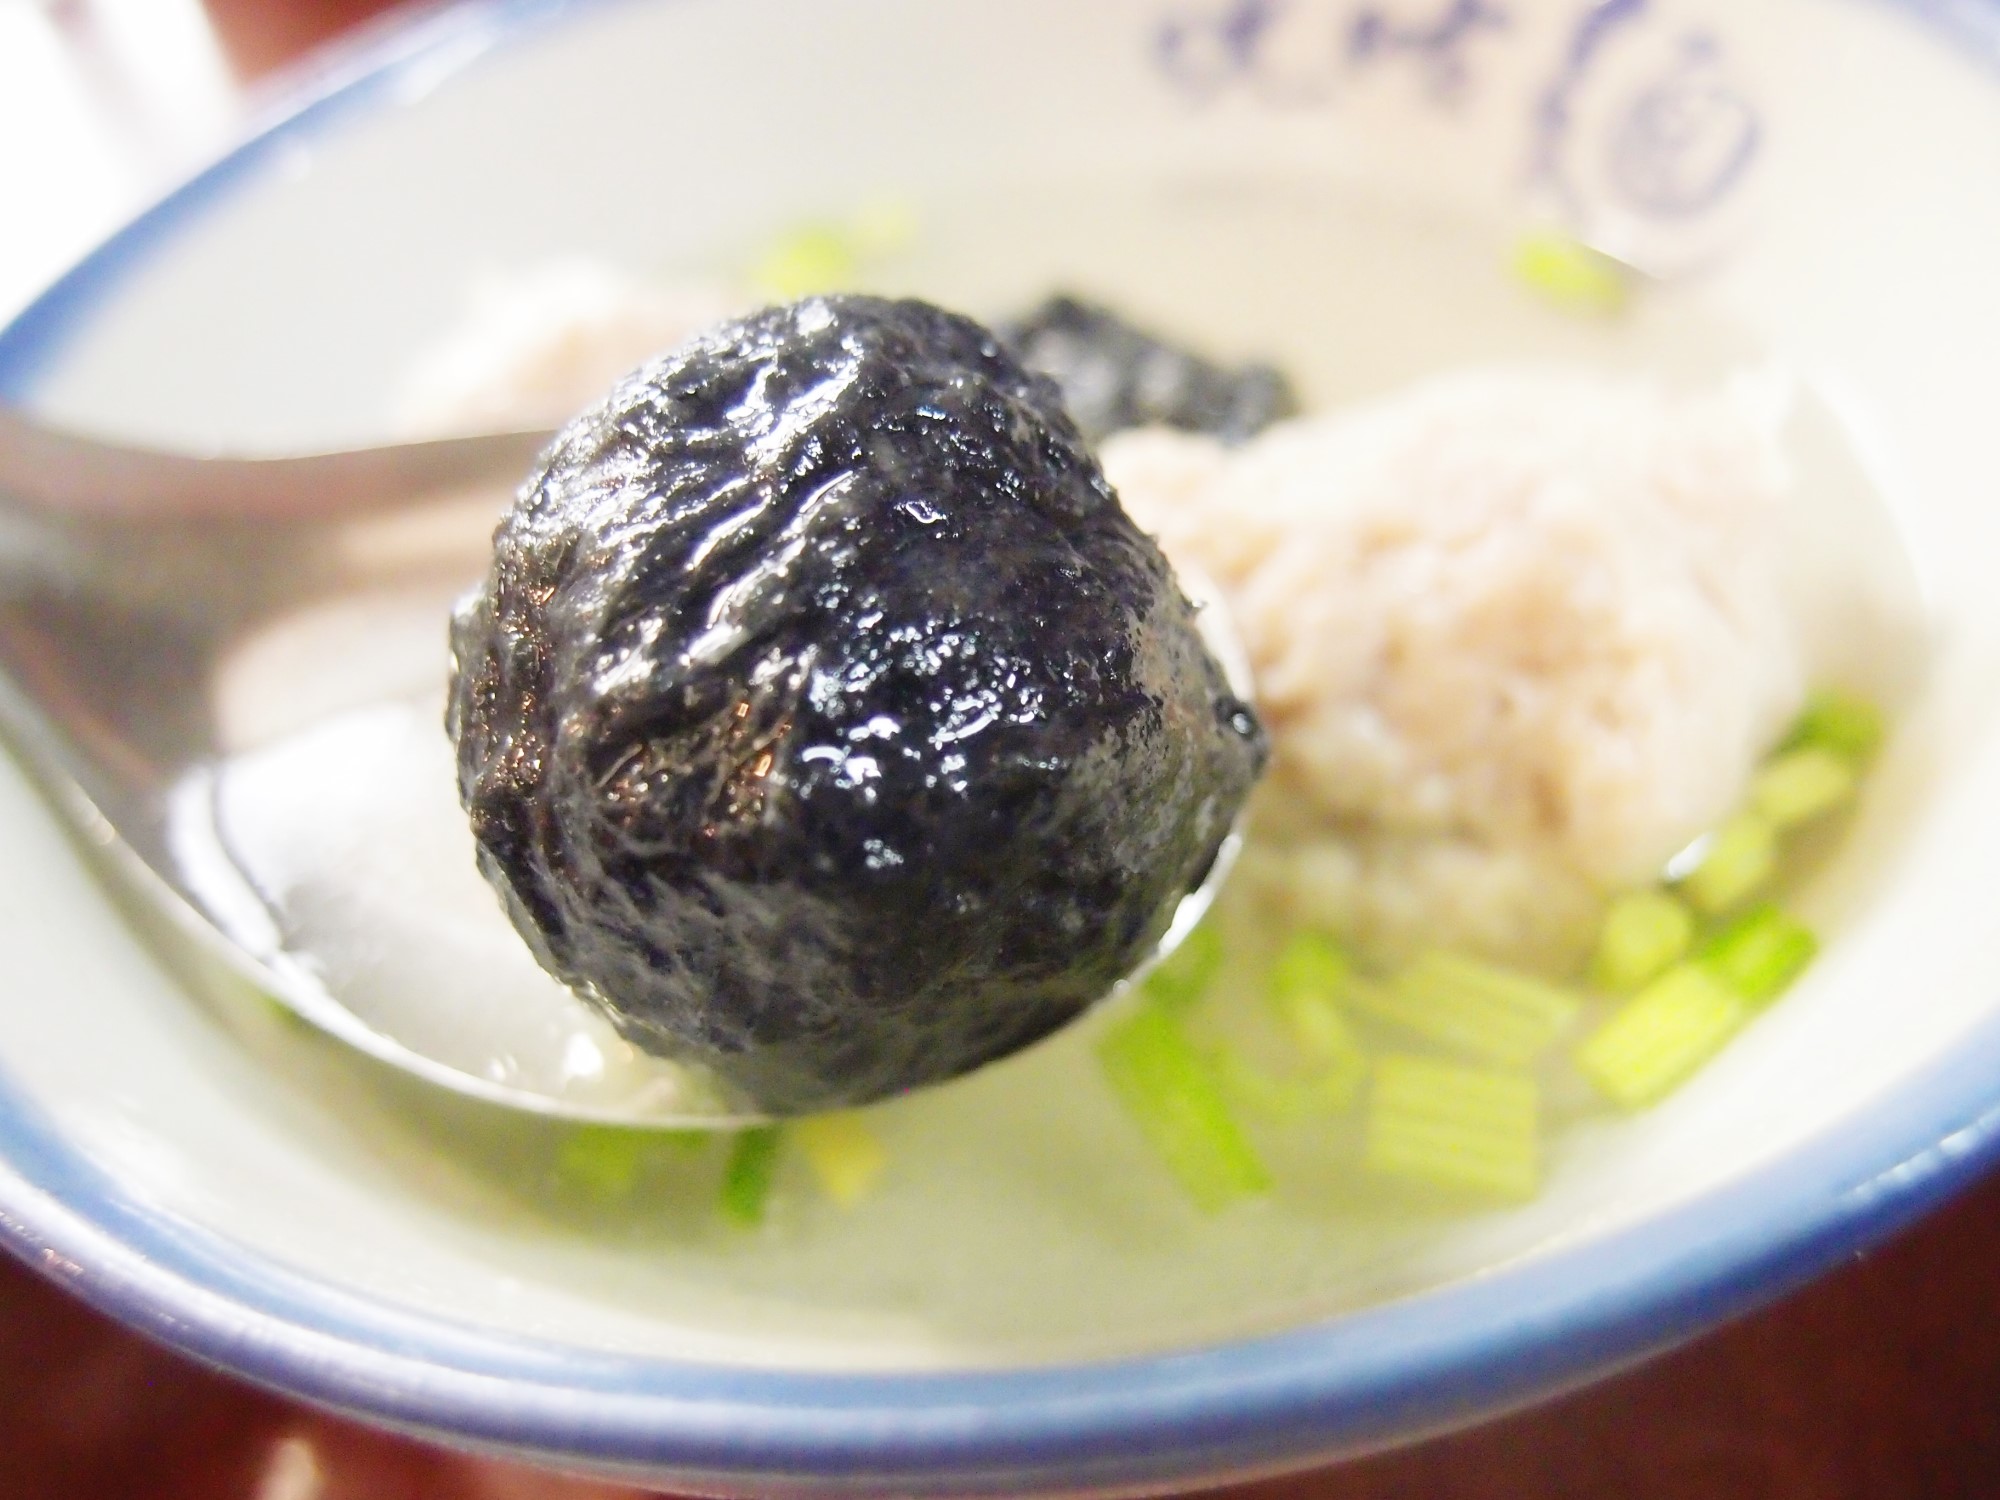 新竹美食｜ㄤ姑麵~關西超過一甲子的古早味人氣麵食